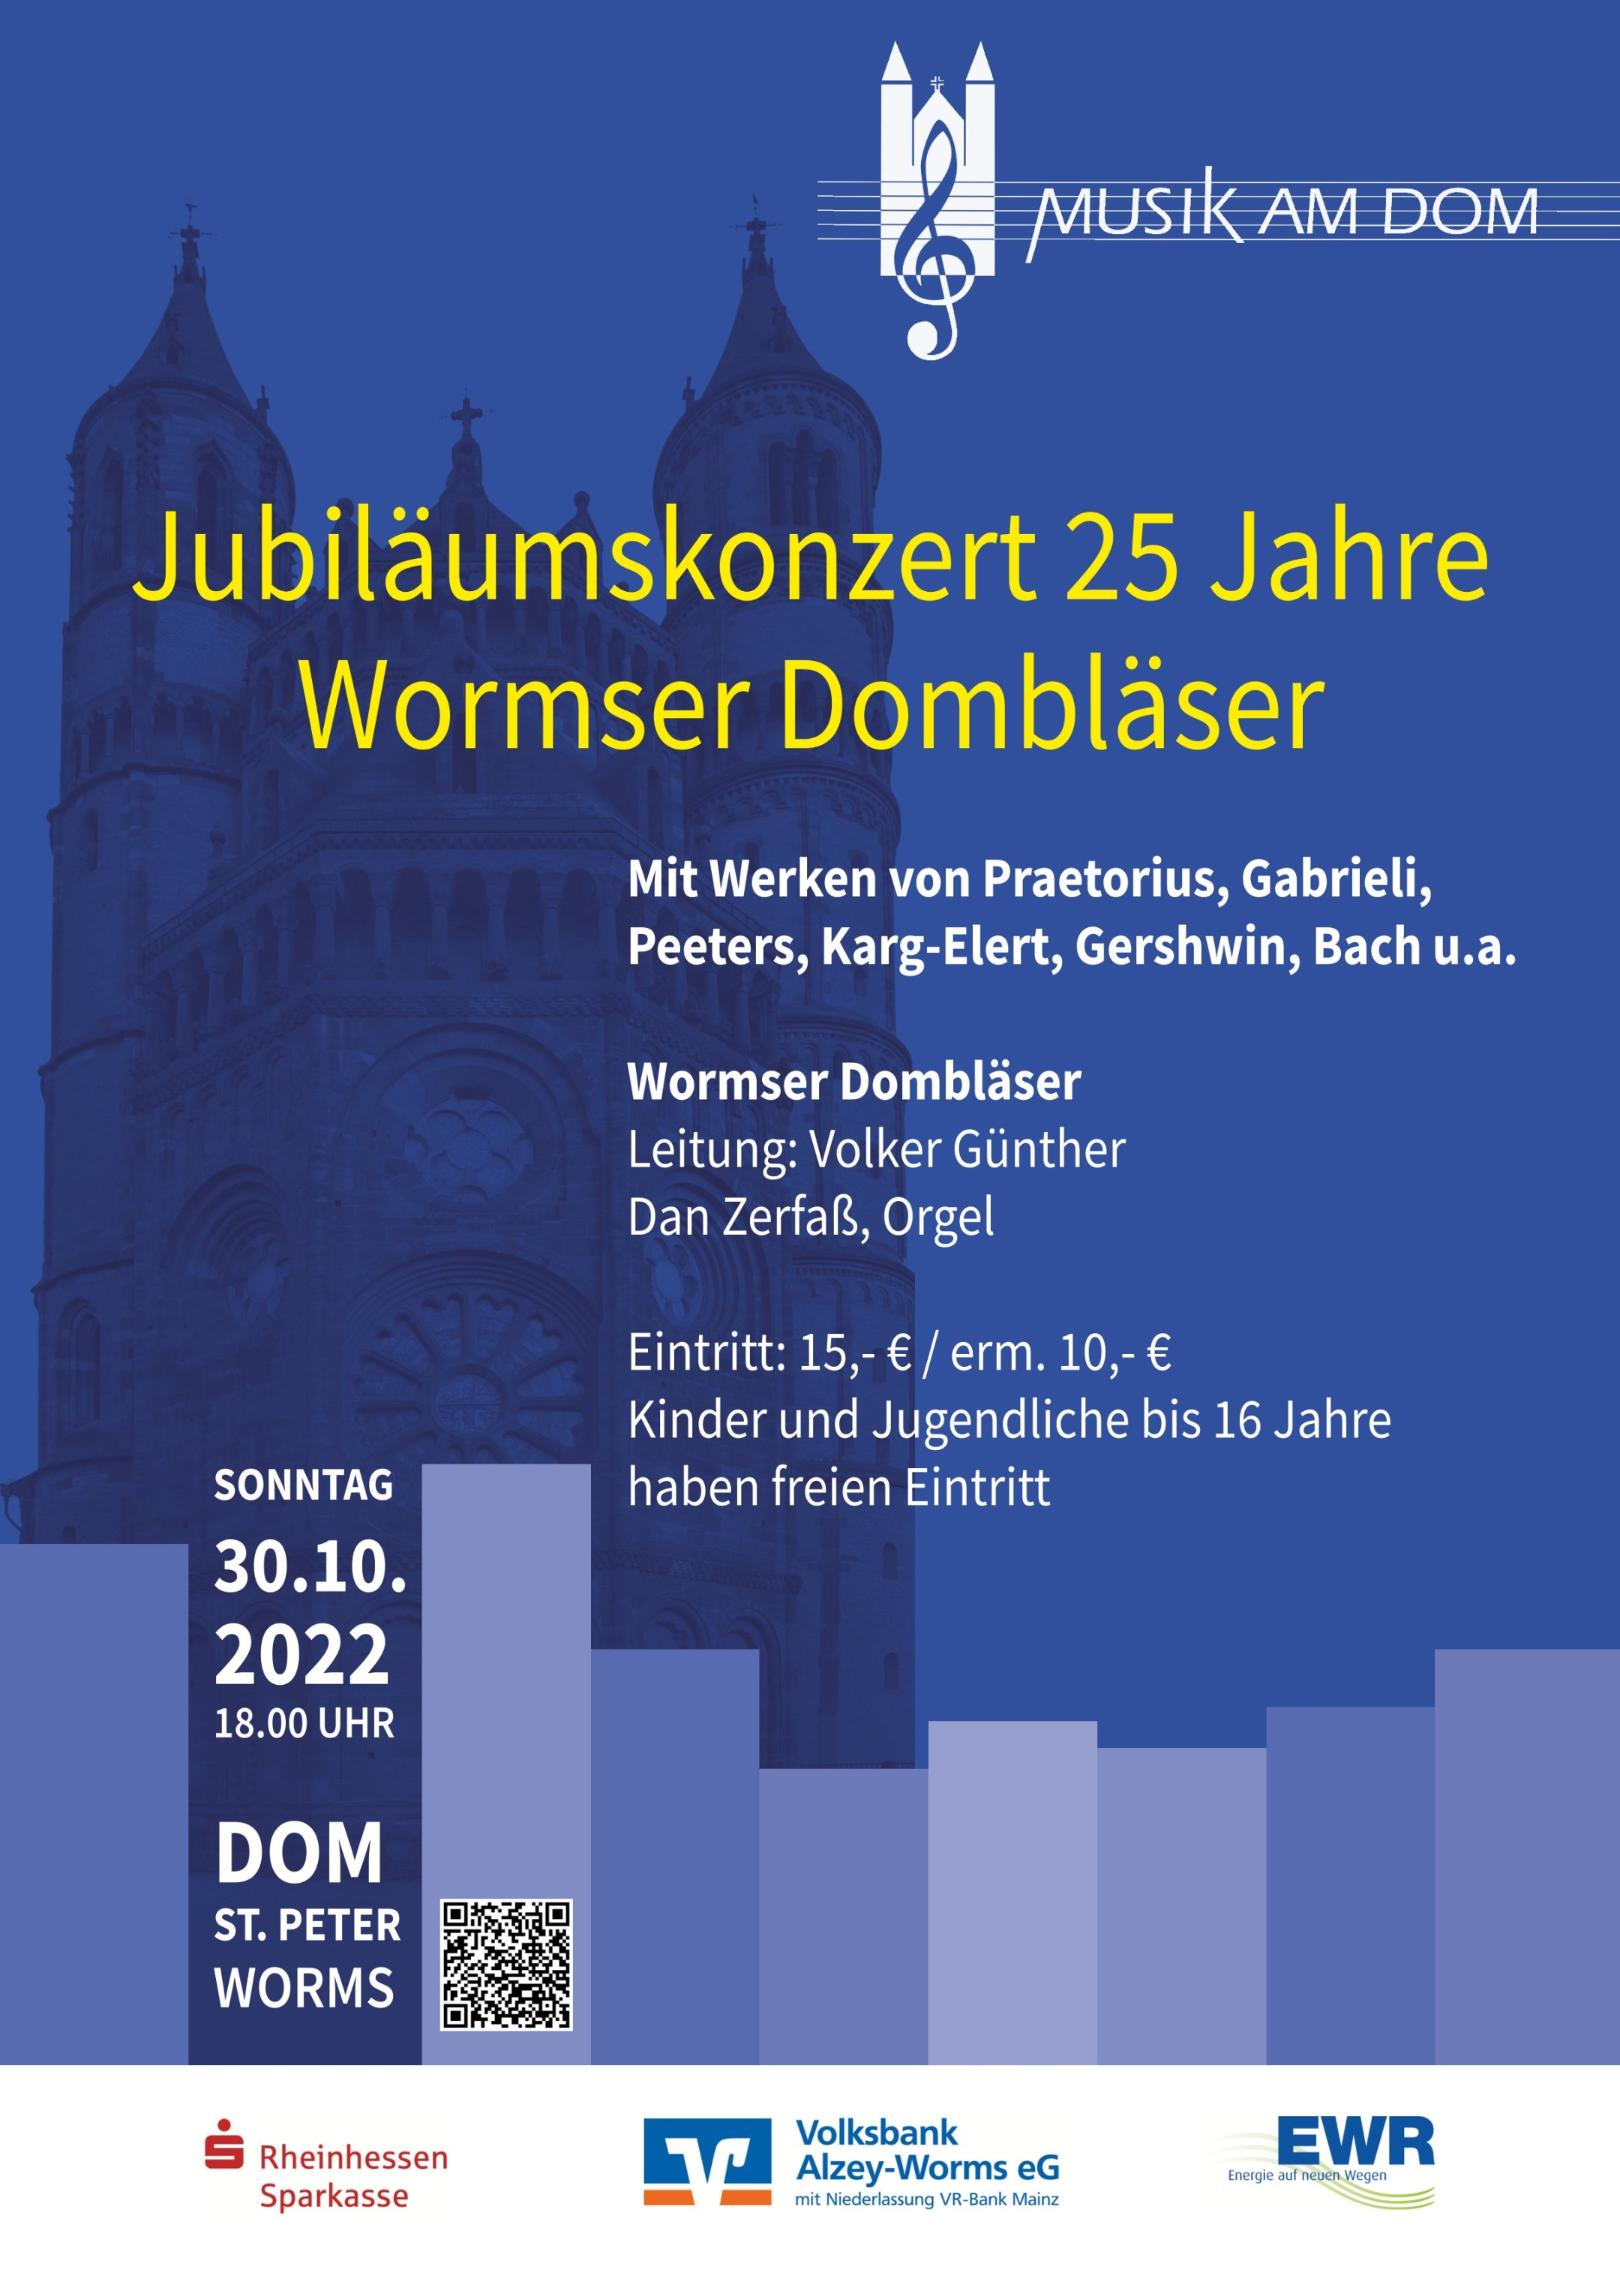 VMD_25 Jahre Wormser Dombläser (c) Verein Musik am Dom